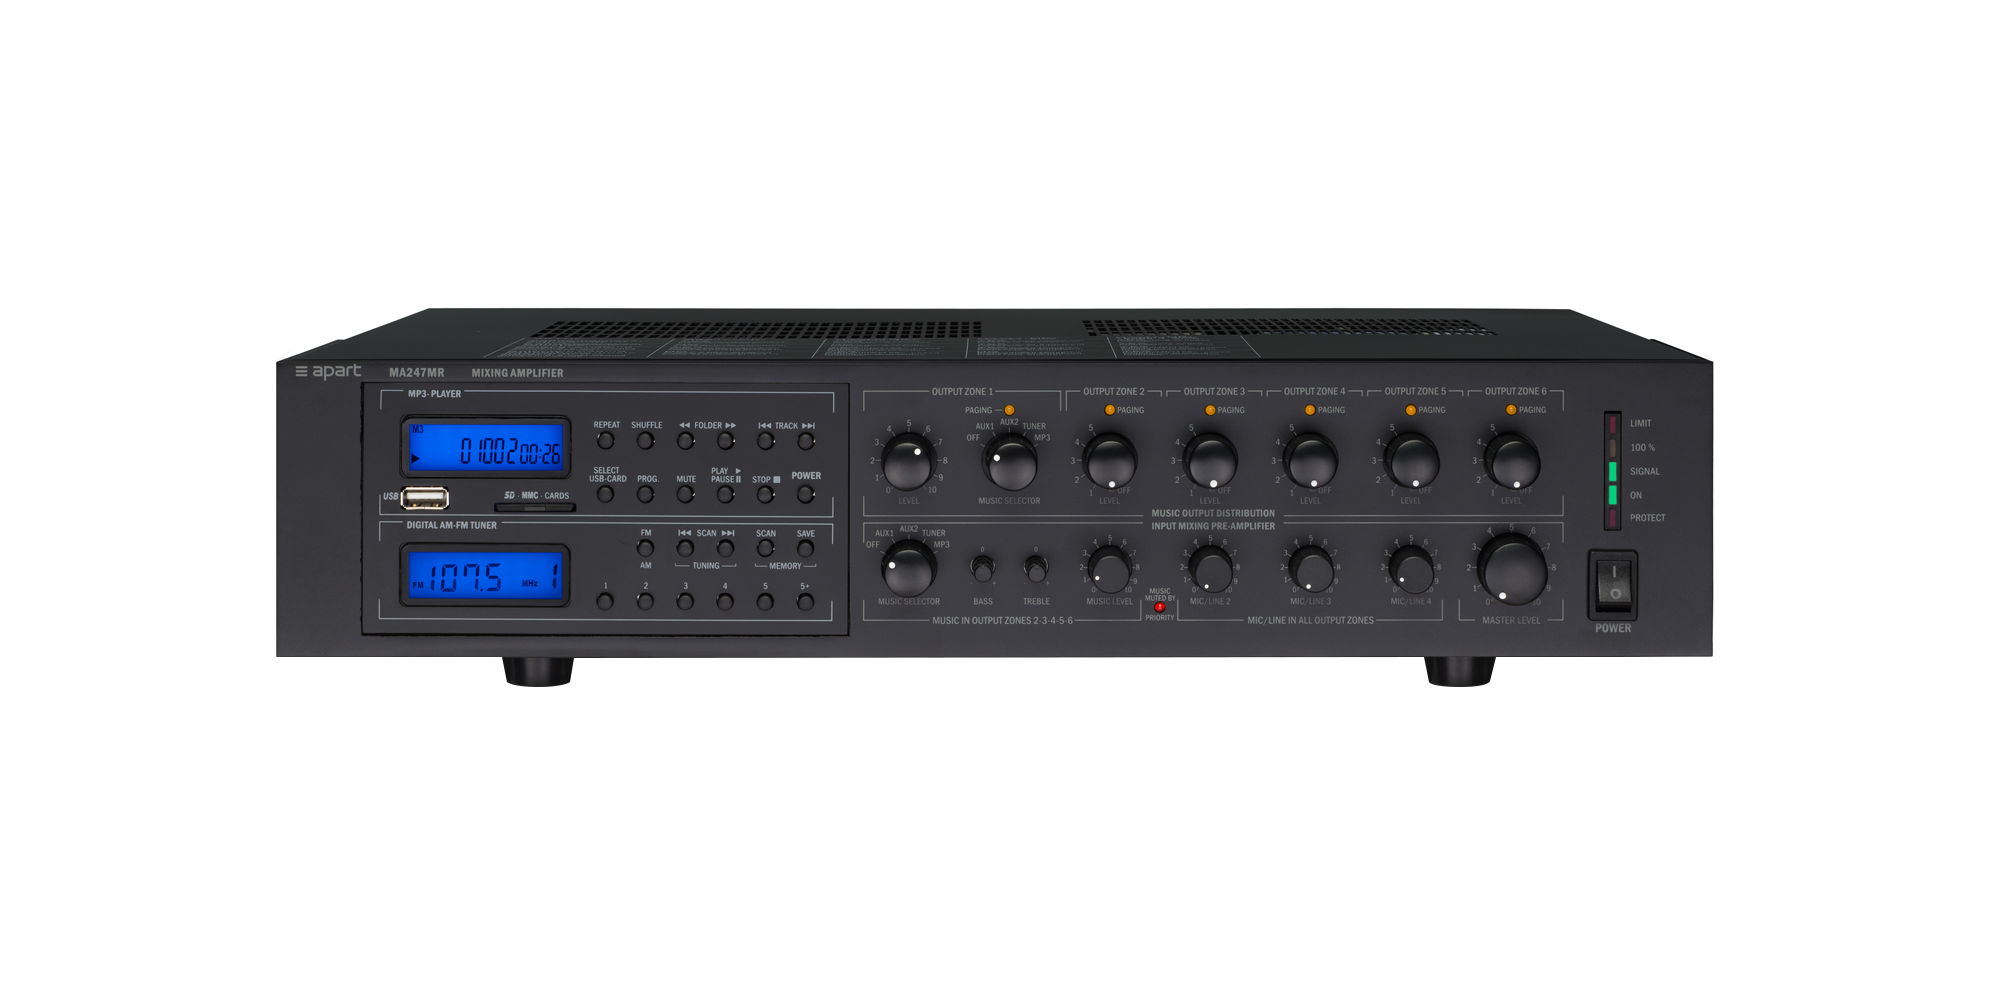 240 watt 6-zone 100volt amplifier system with FM/AM tuner